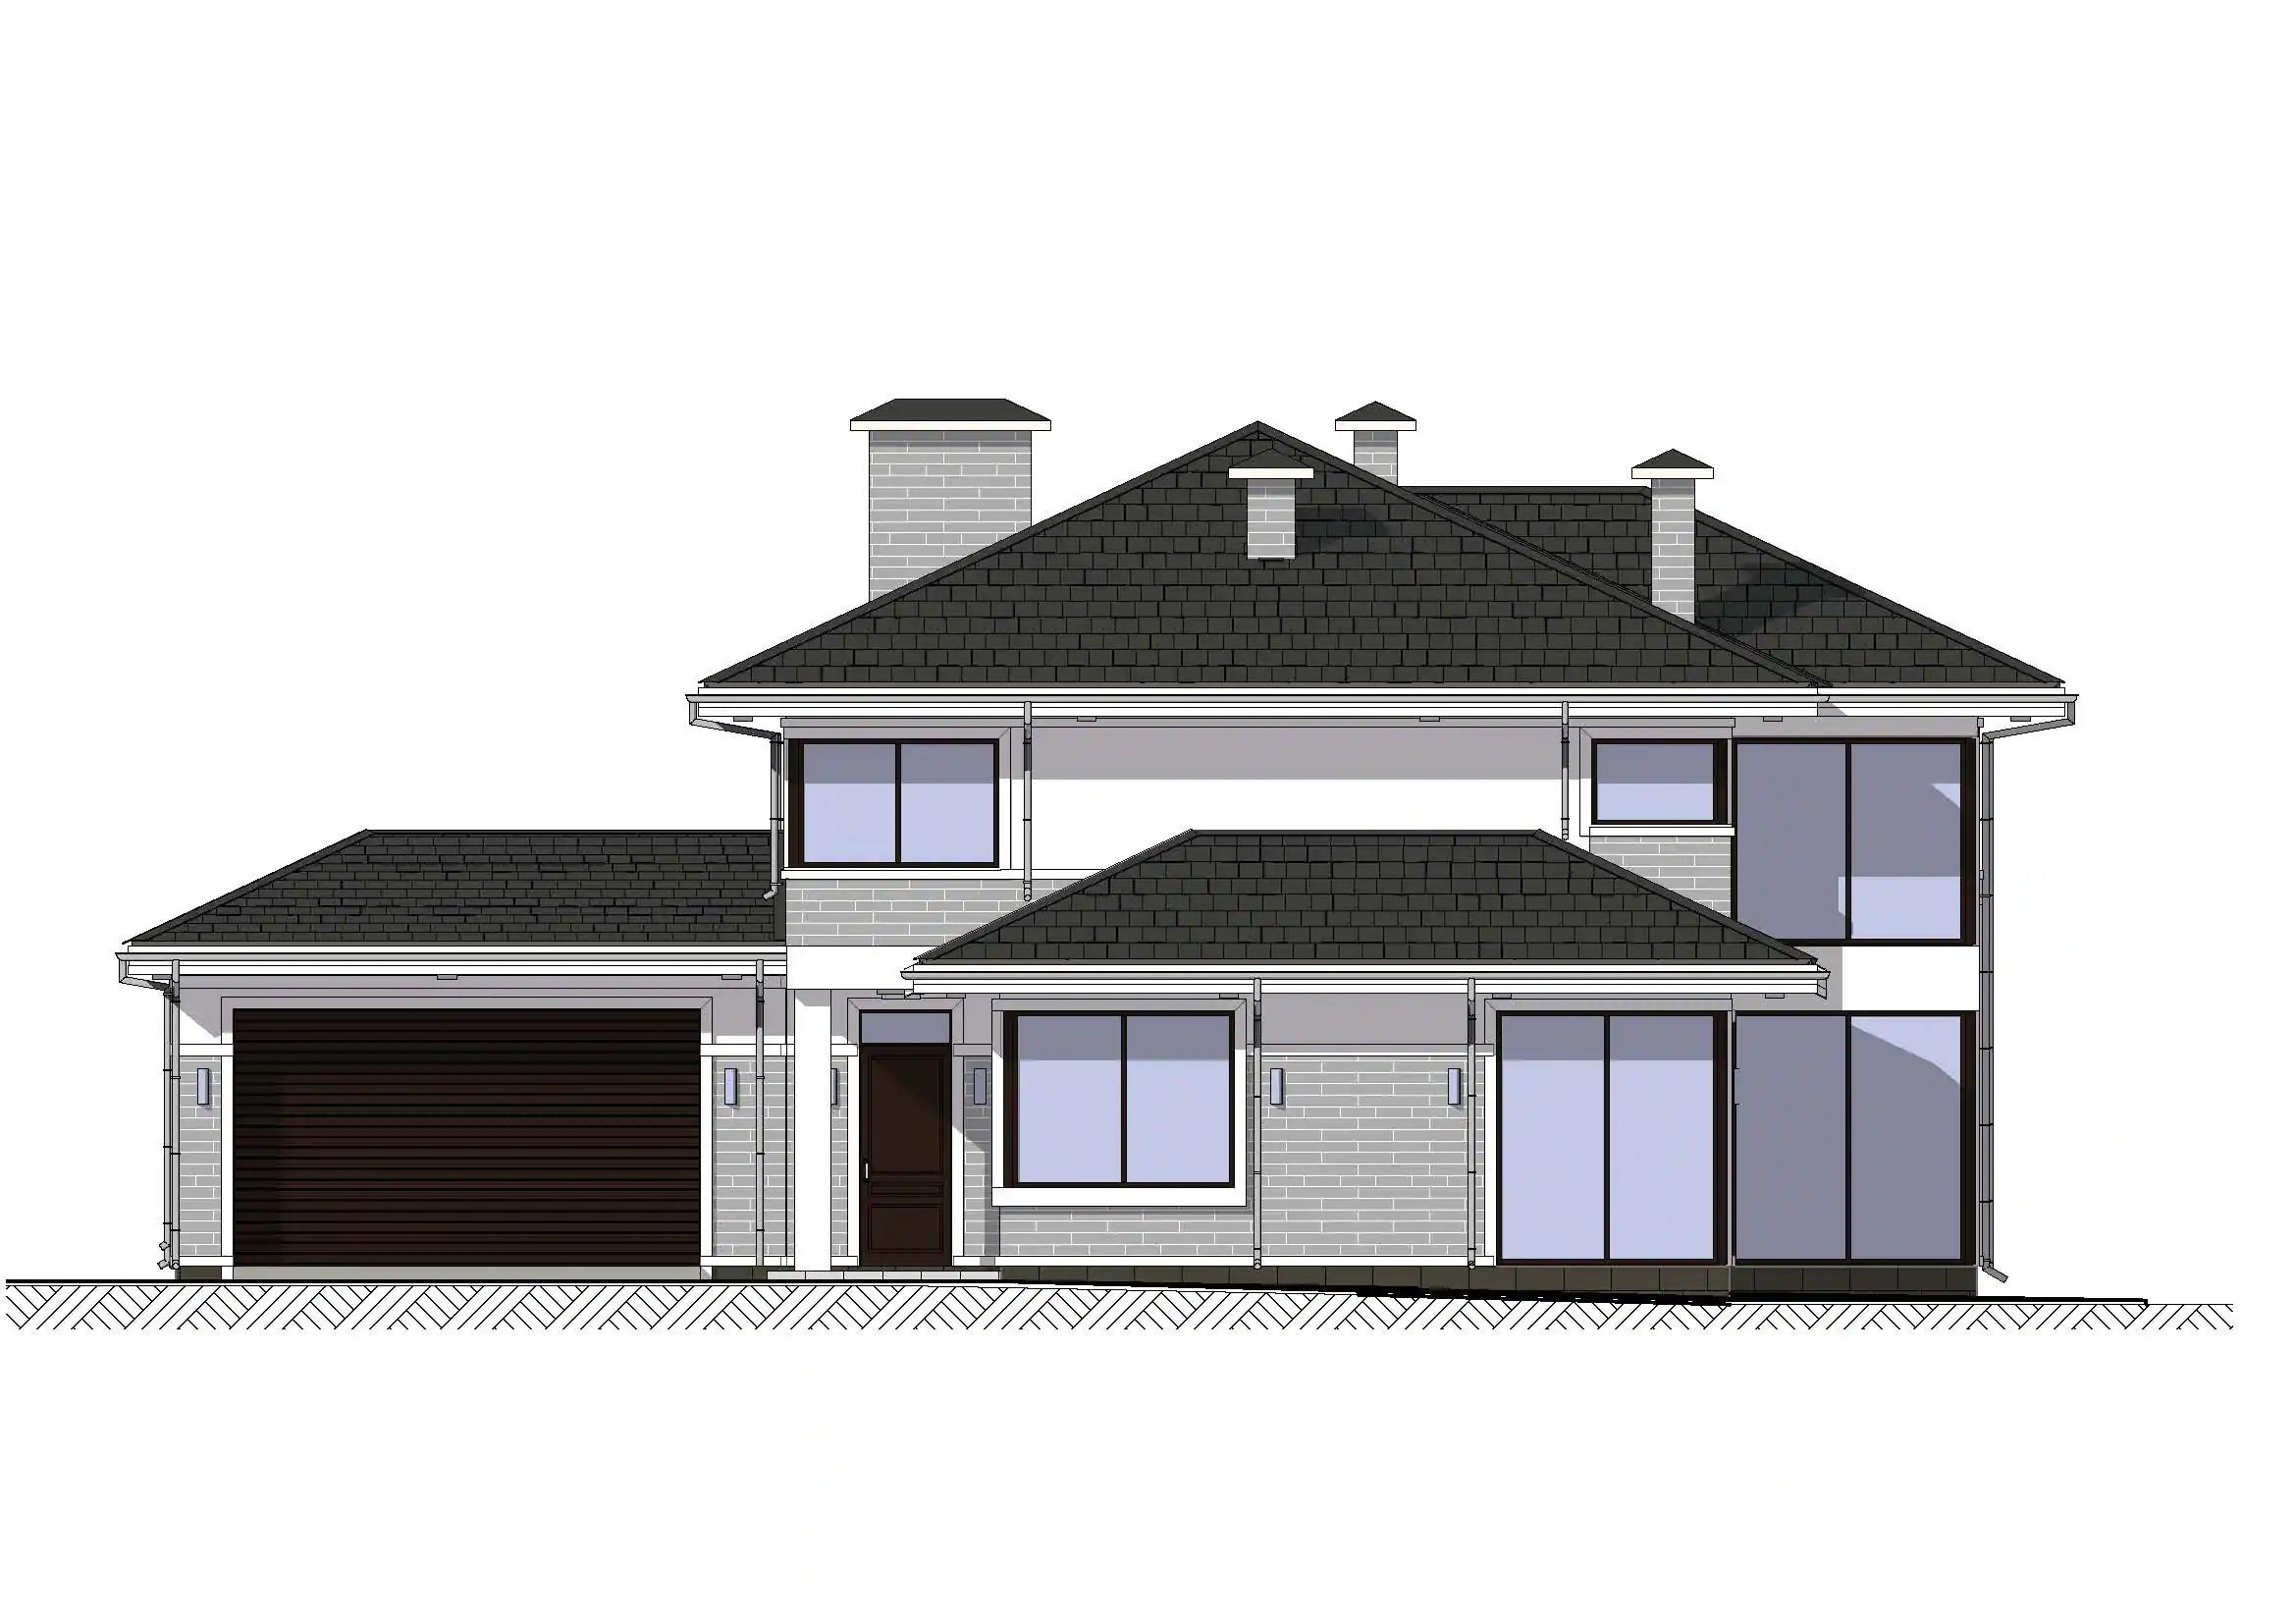 Фасады проекта дома №h-1624 proect-1624_f1_result.webp